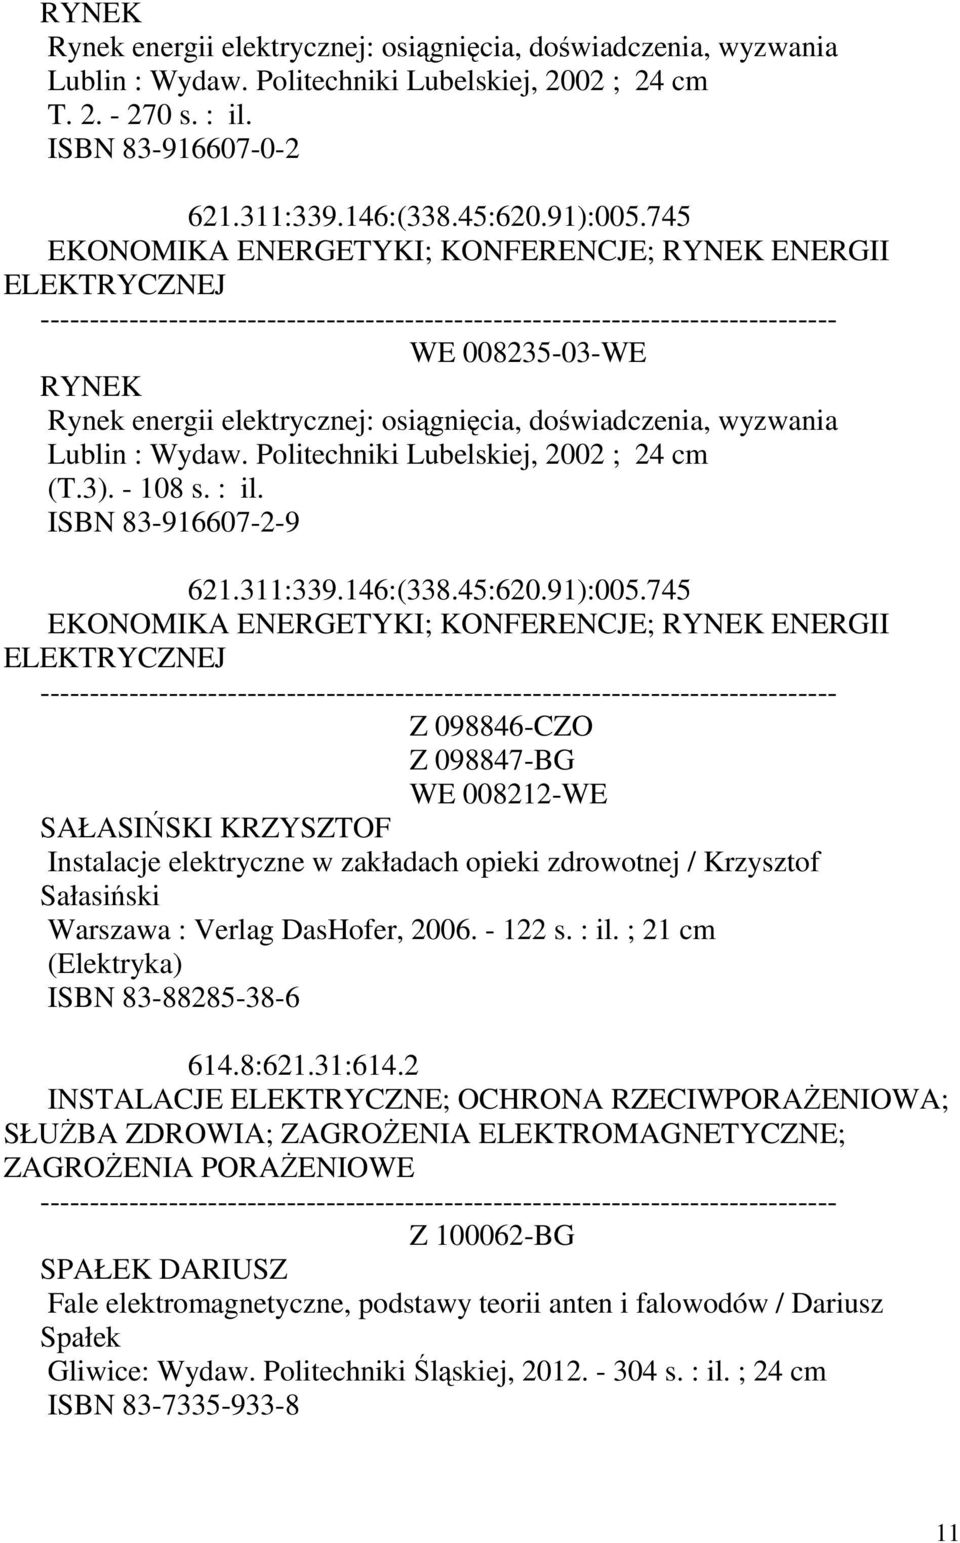 Politechniki Lubelskiej, 2002 ; (T.3). - 108 s. : il. ISBN 83-916607-2-9 621.311:339.146:(338.45:620.91):005.